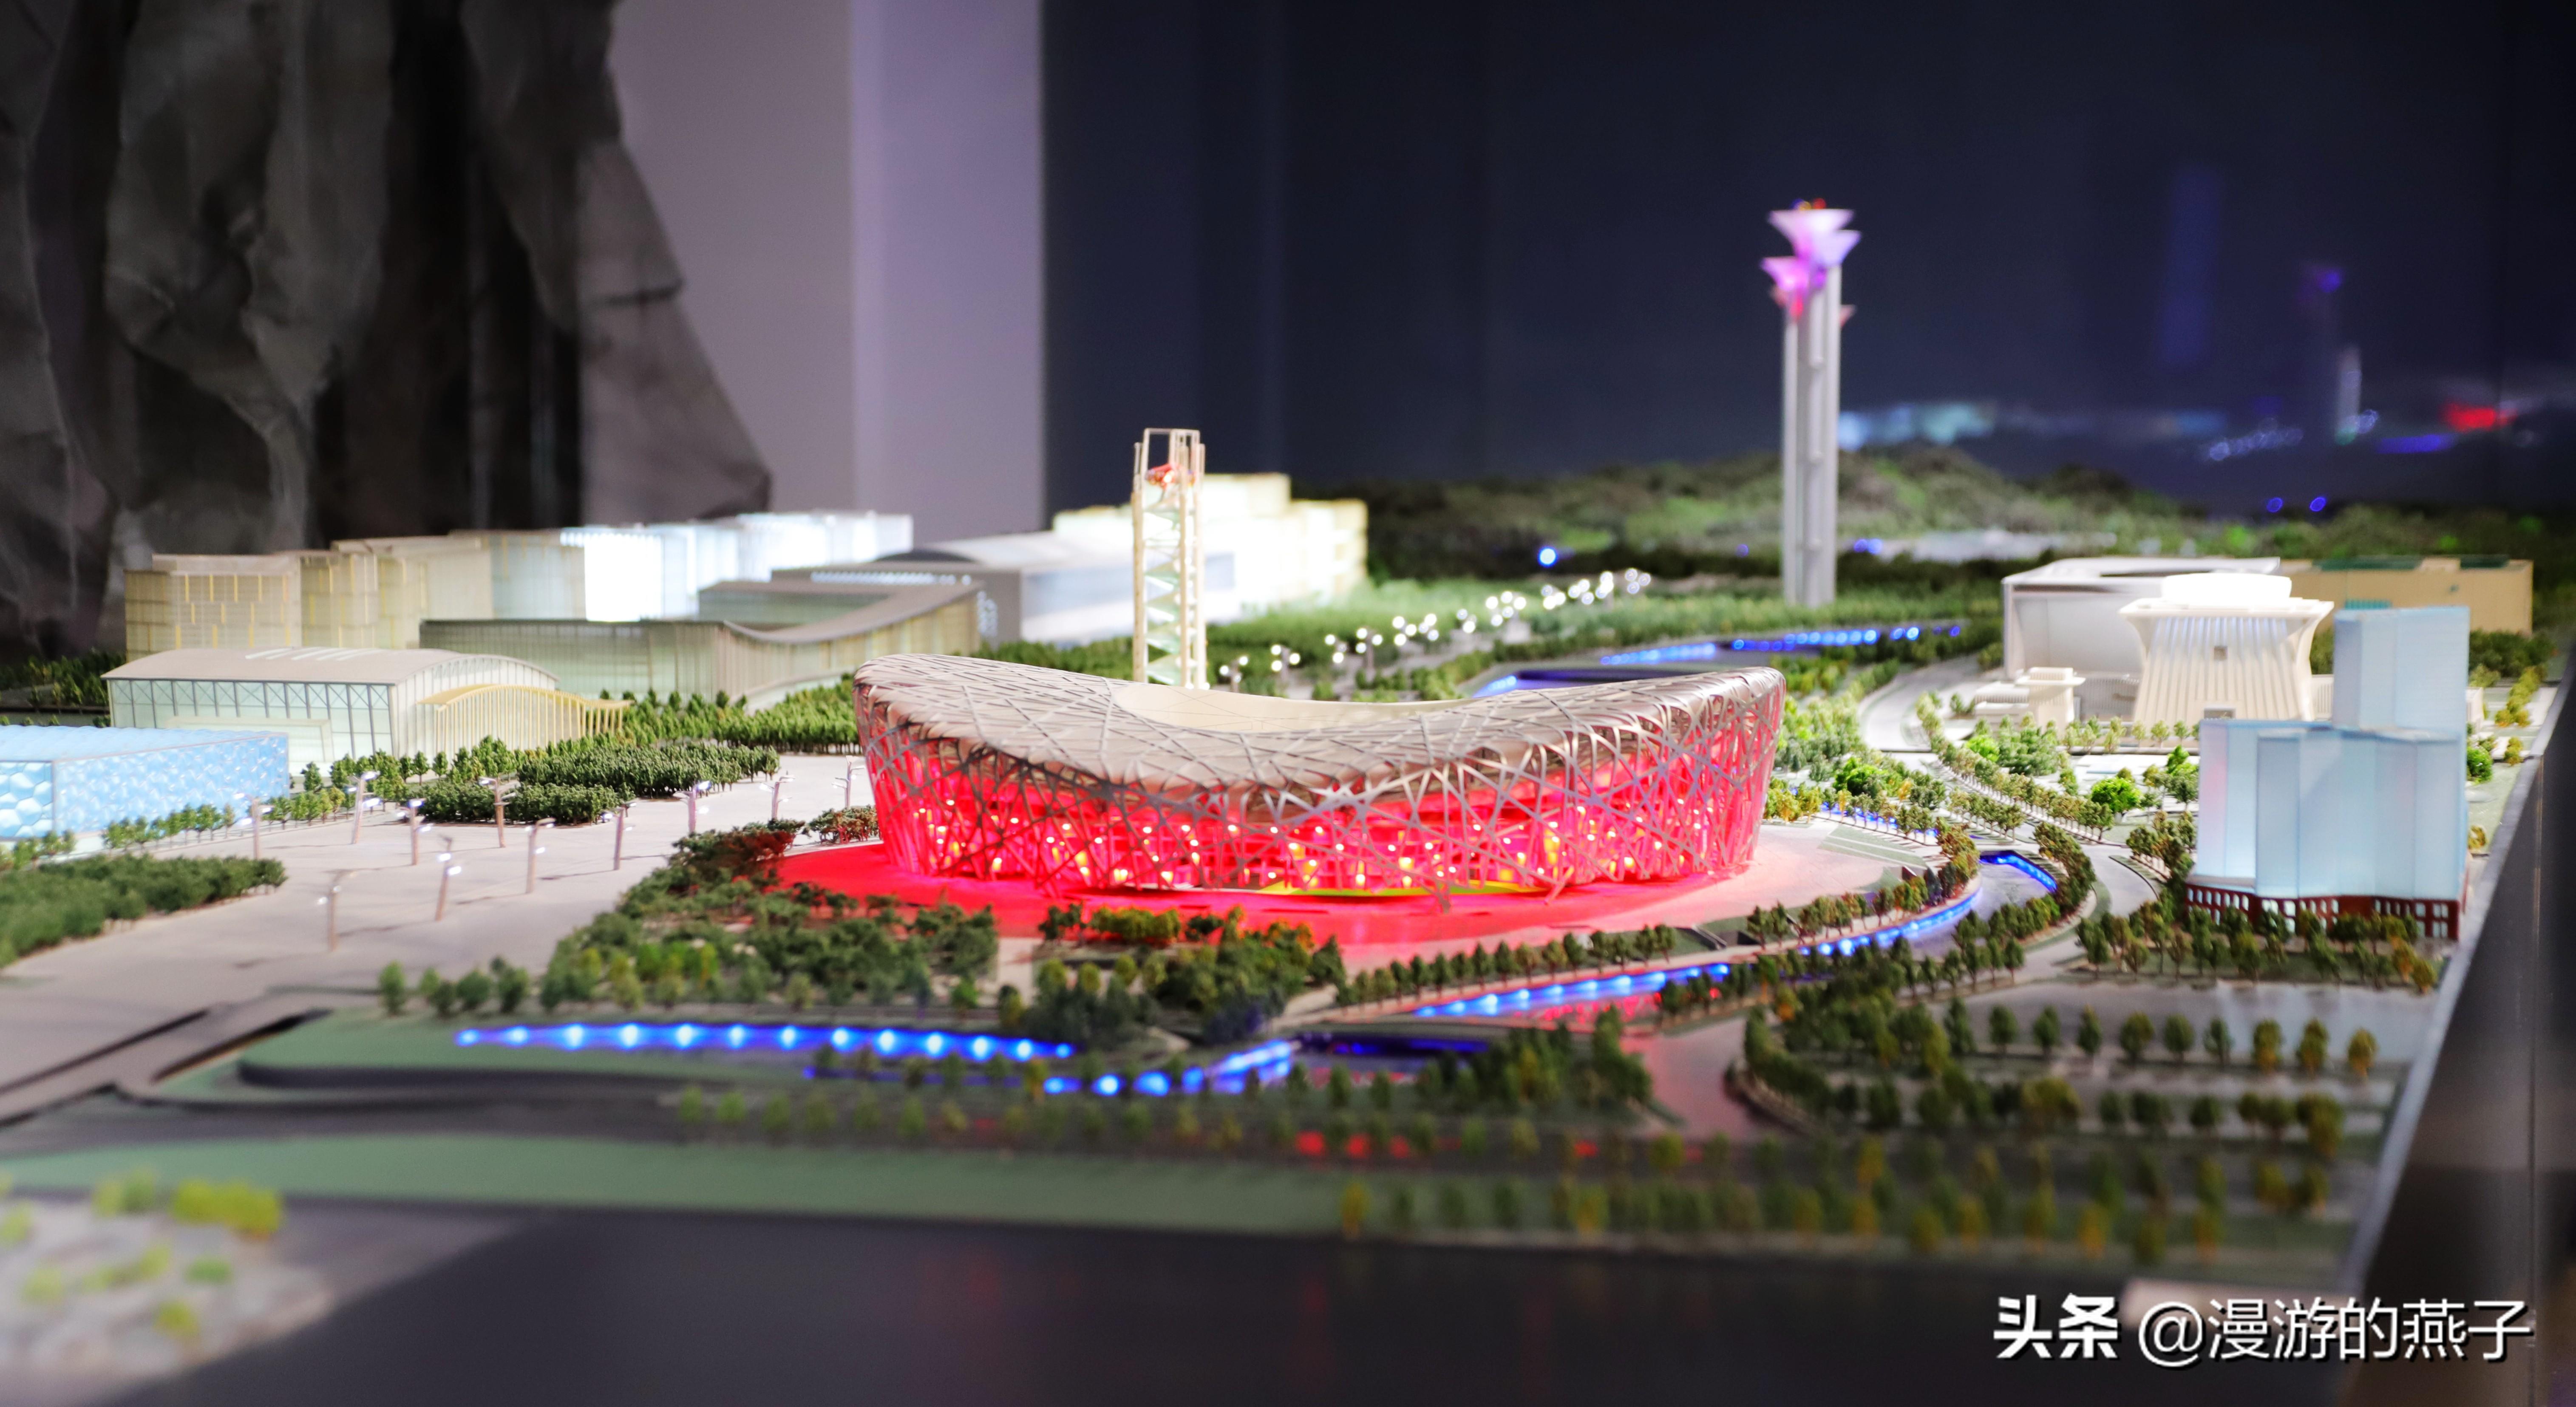 来北京市规划展览馆,五大看点让你更了解北京城